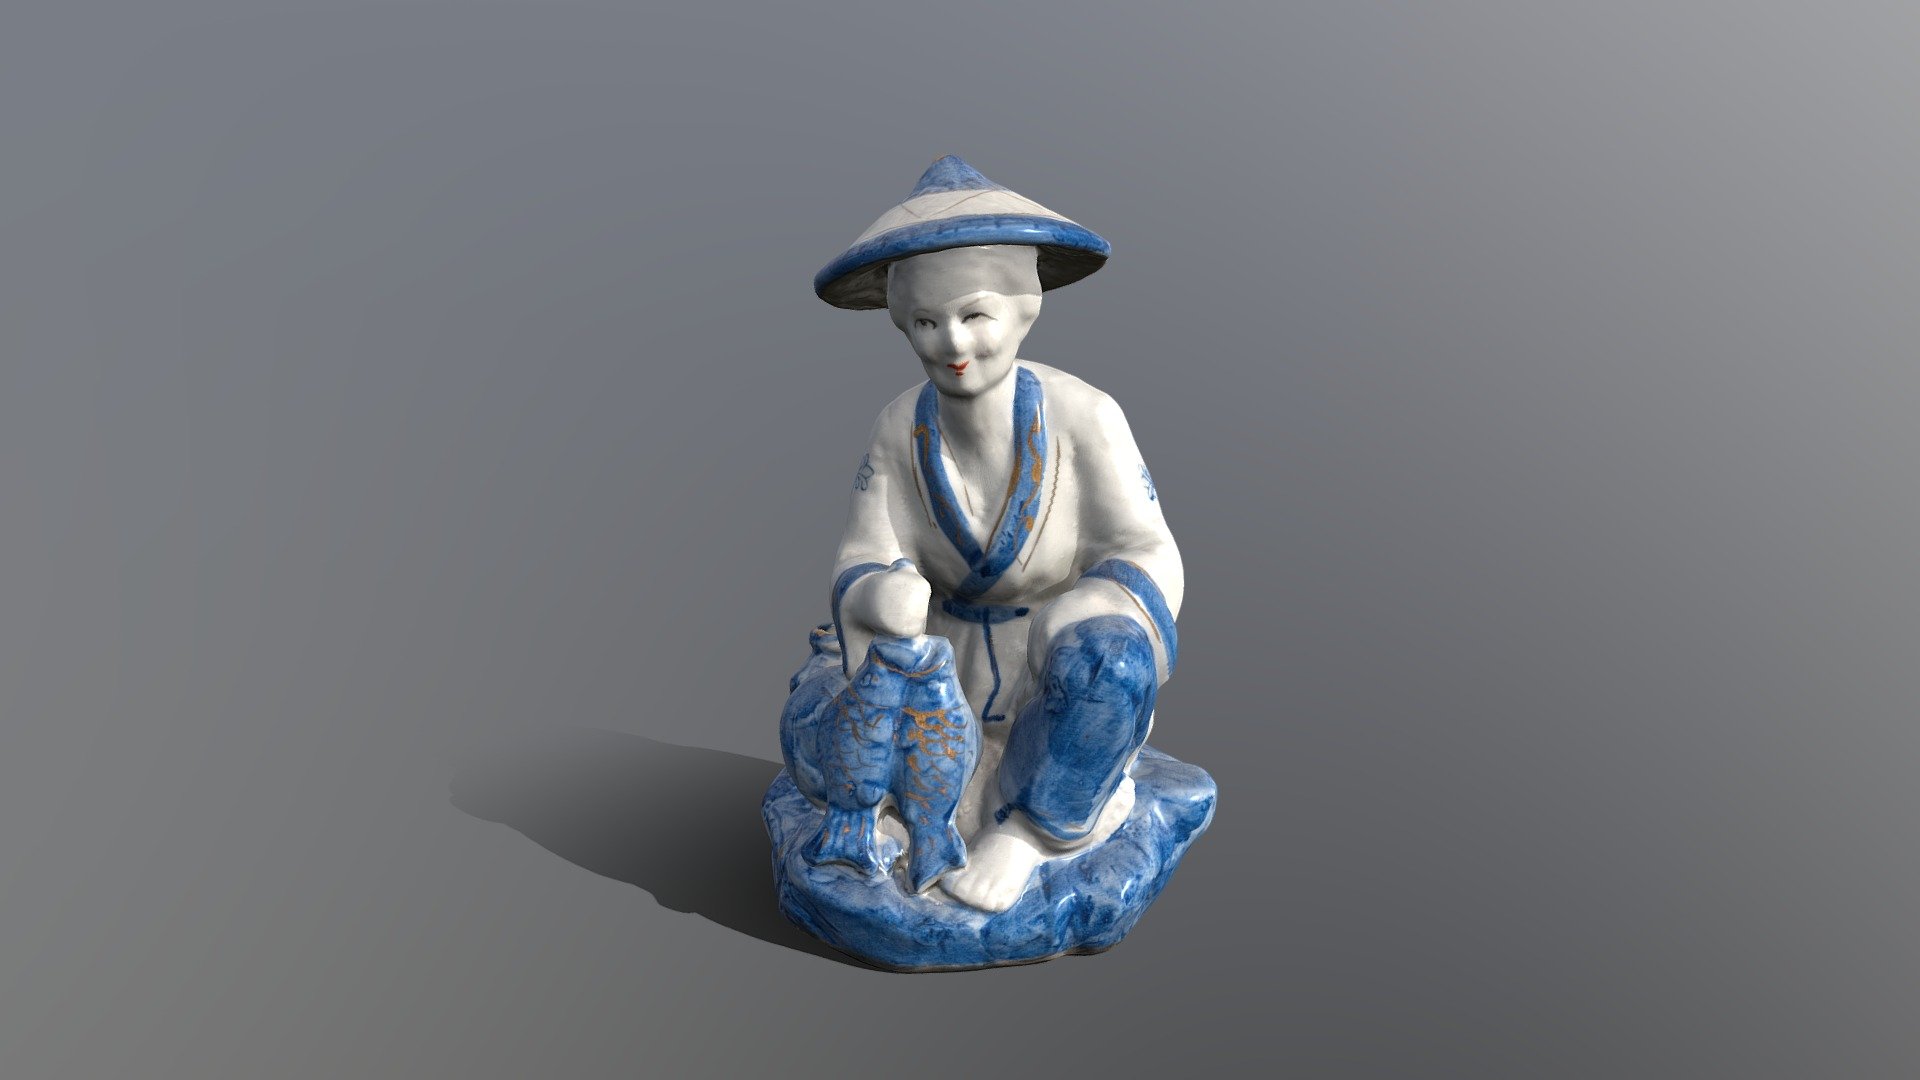 Chinese ceramic